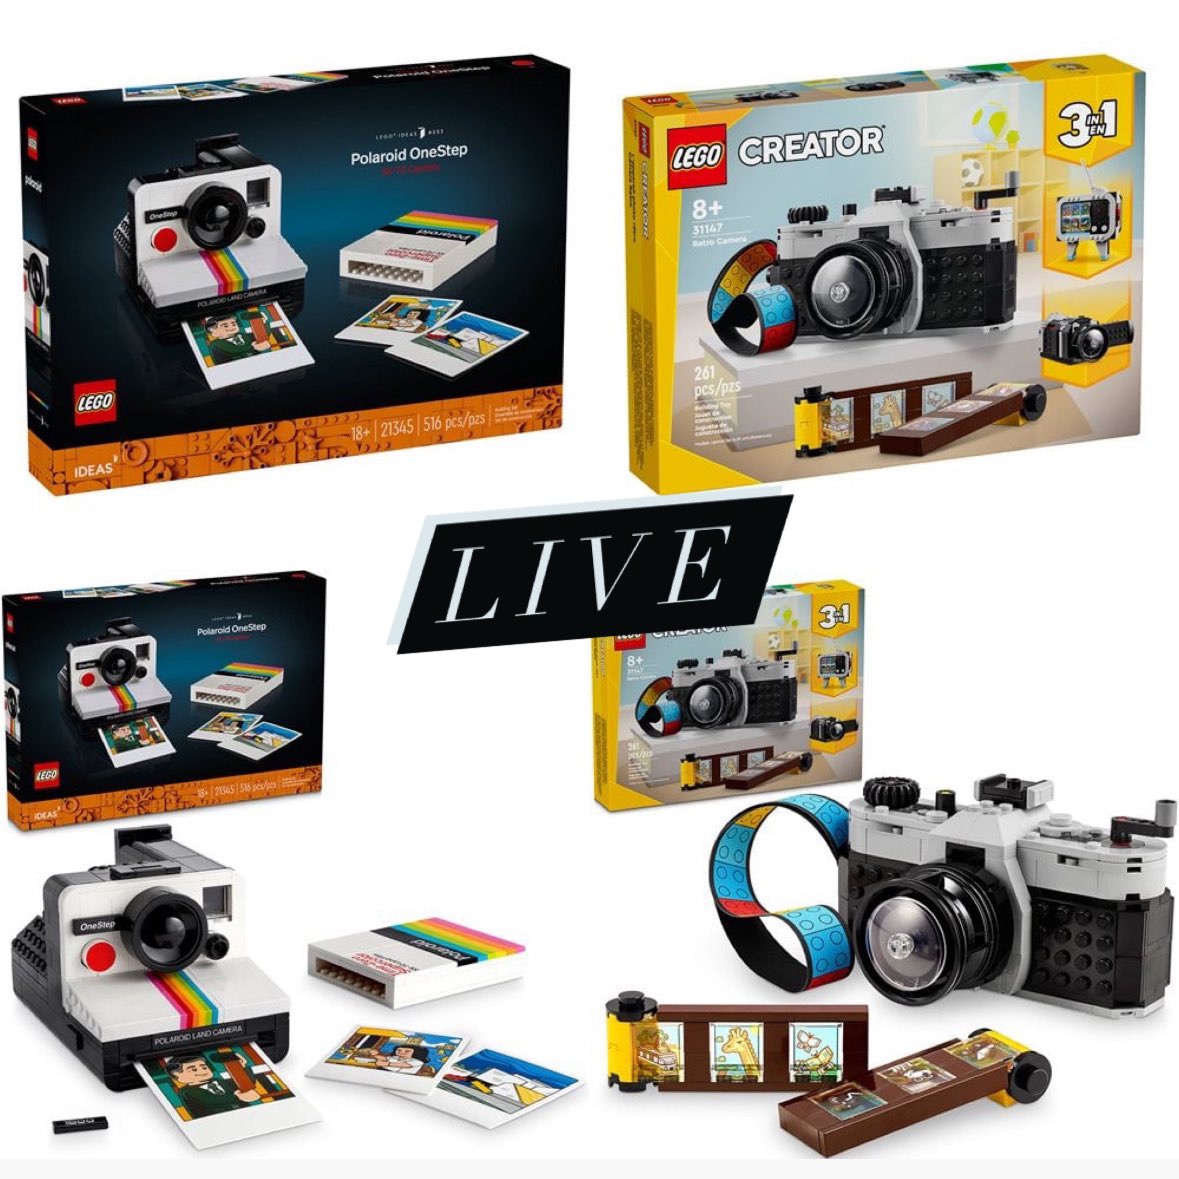 Lego Polaroid Camera announced - Niche Gamer